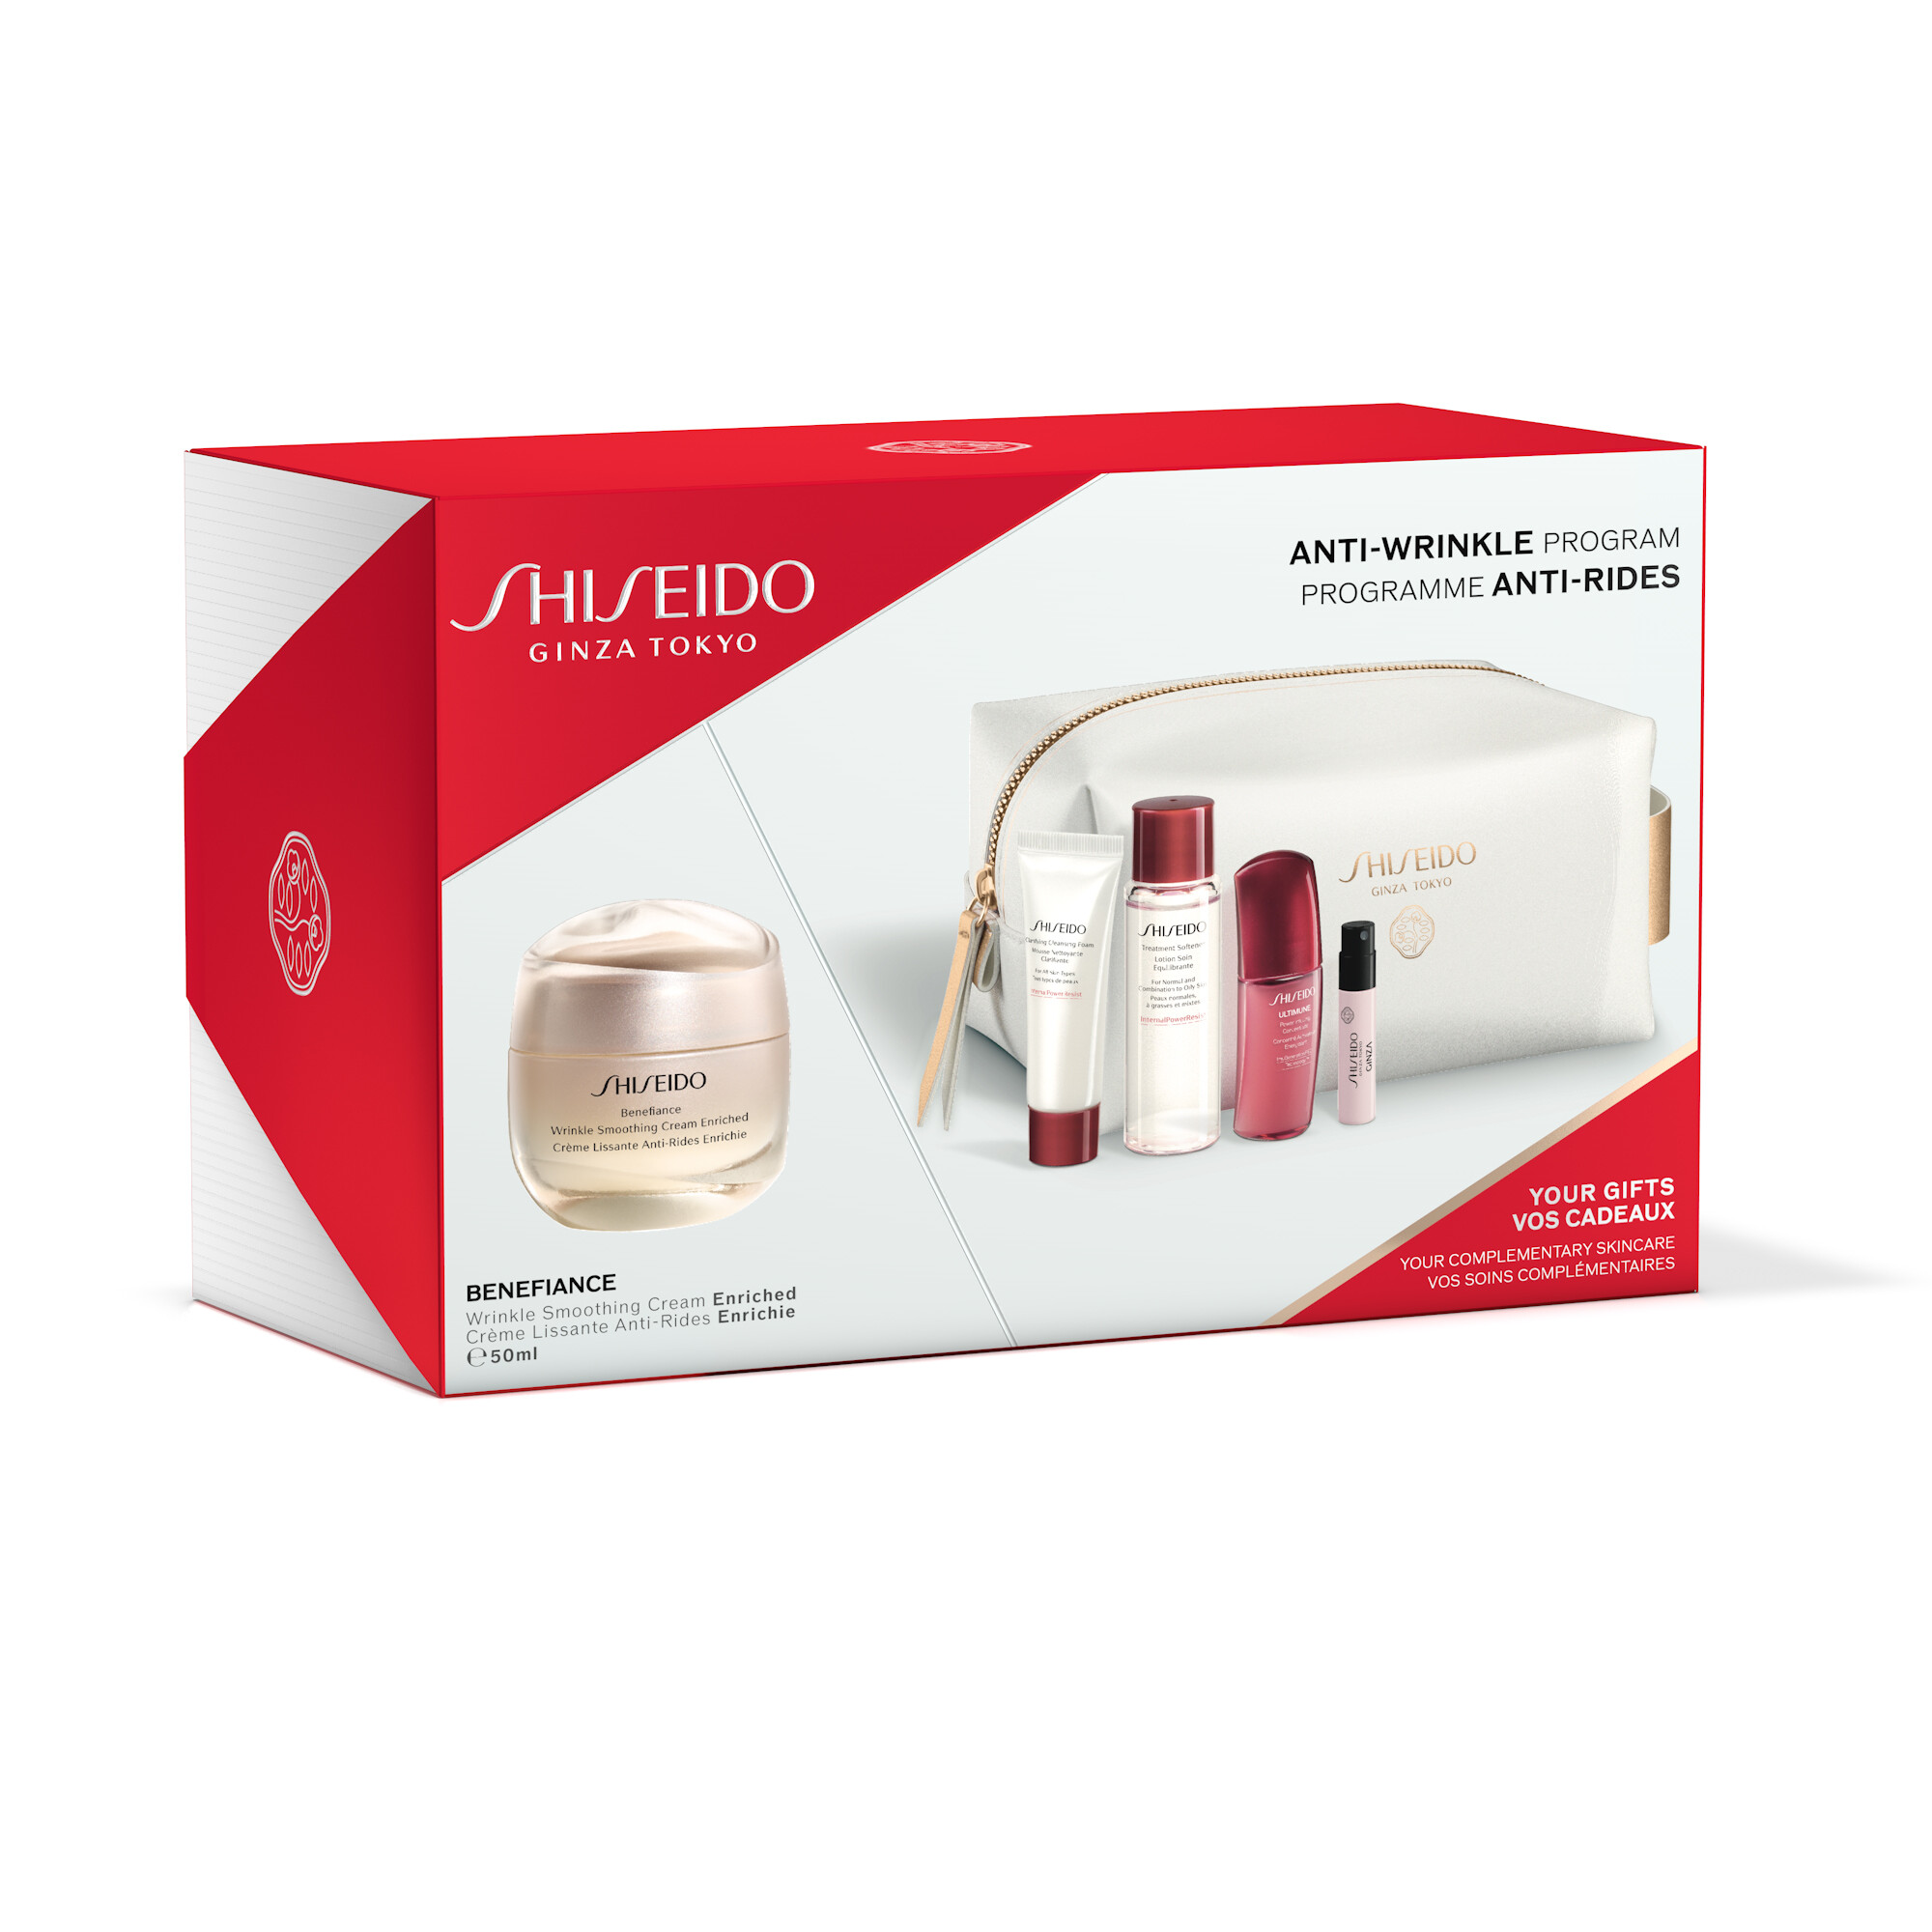 Pflege Shiseido Benefiance Wrinkle Smoothing Cream Kit 1058ml bestellen